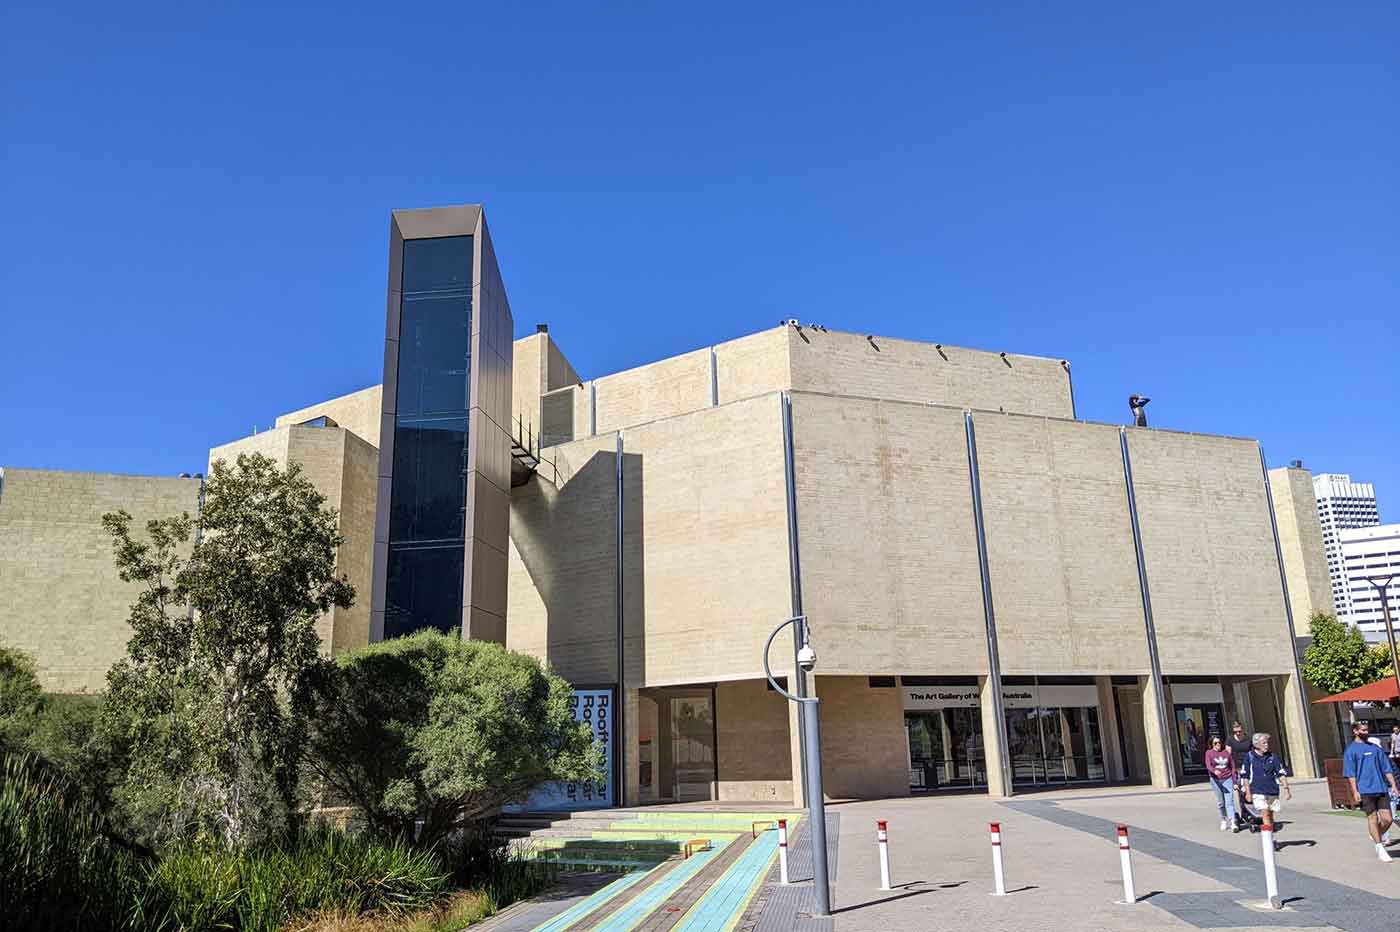 The Art Gallery of Western Australia (AGWA)